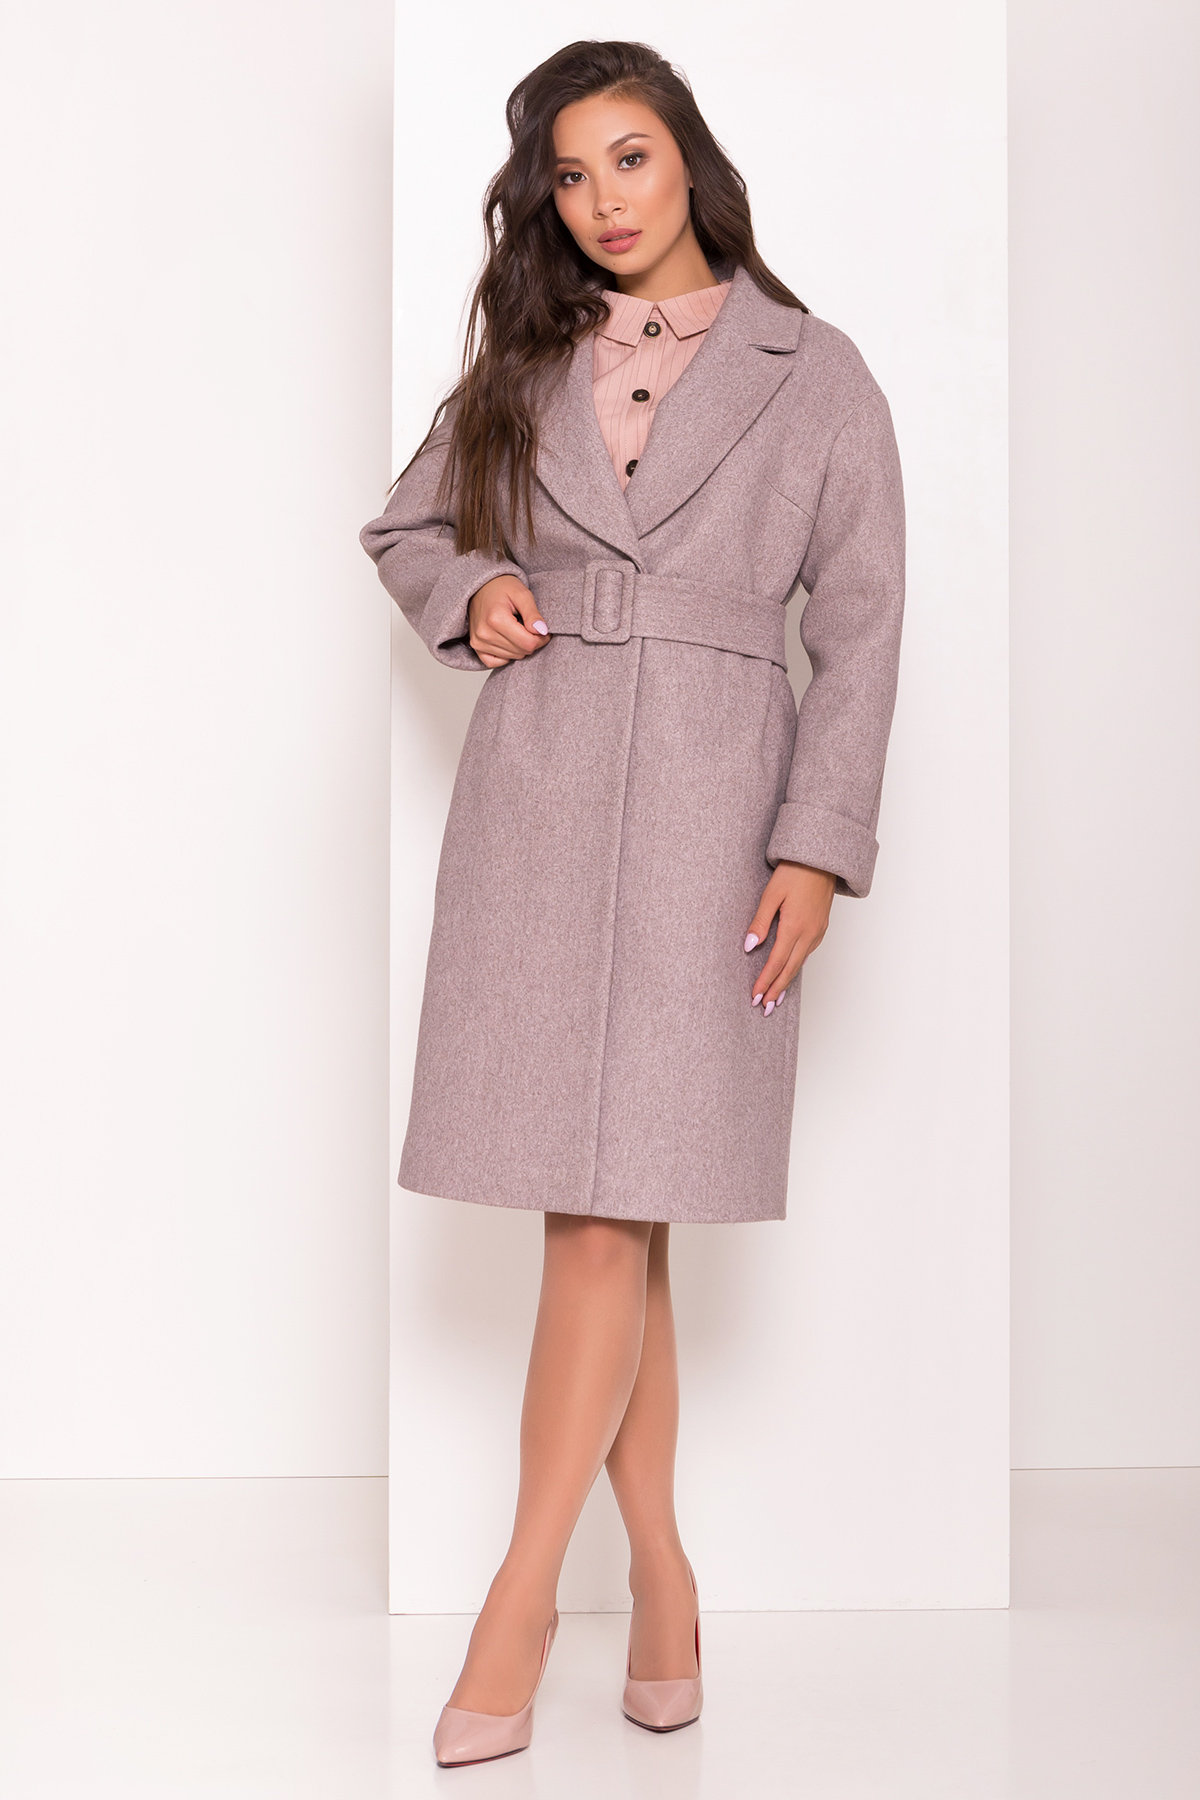 Купить пальто женское демисезонное от Modus Демисезонное пальто Севен 7957